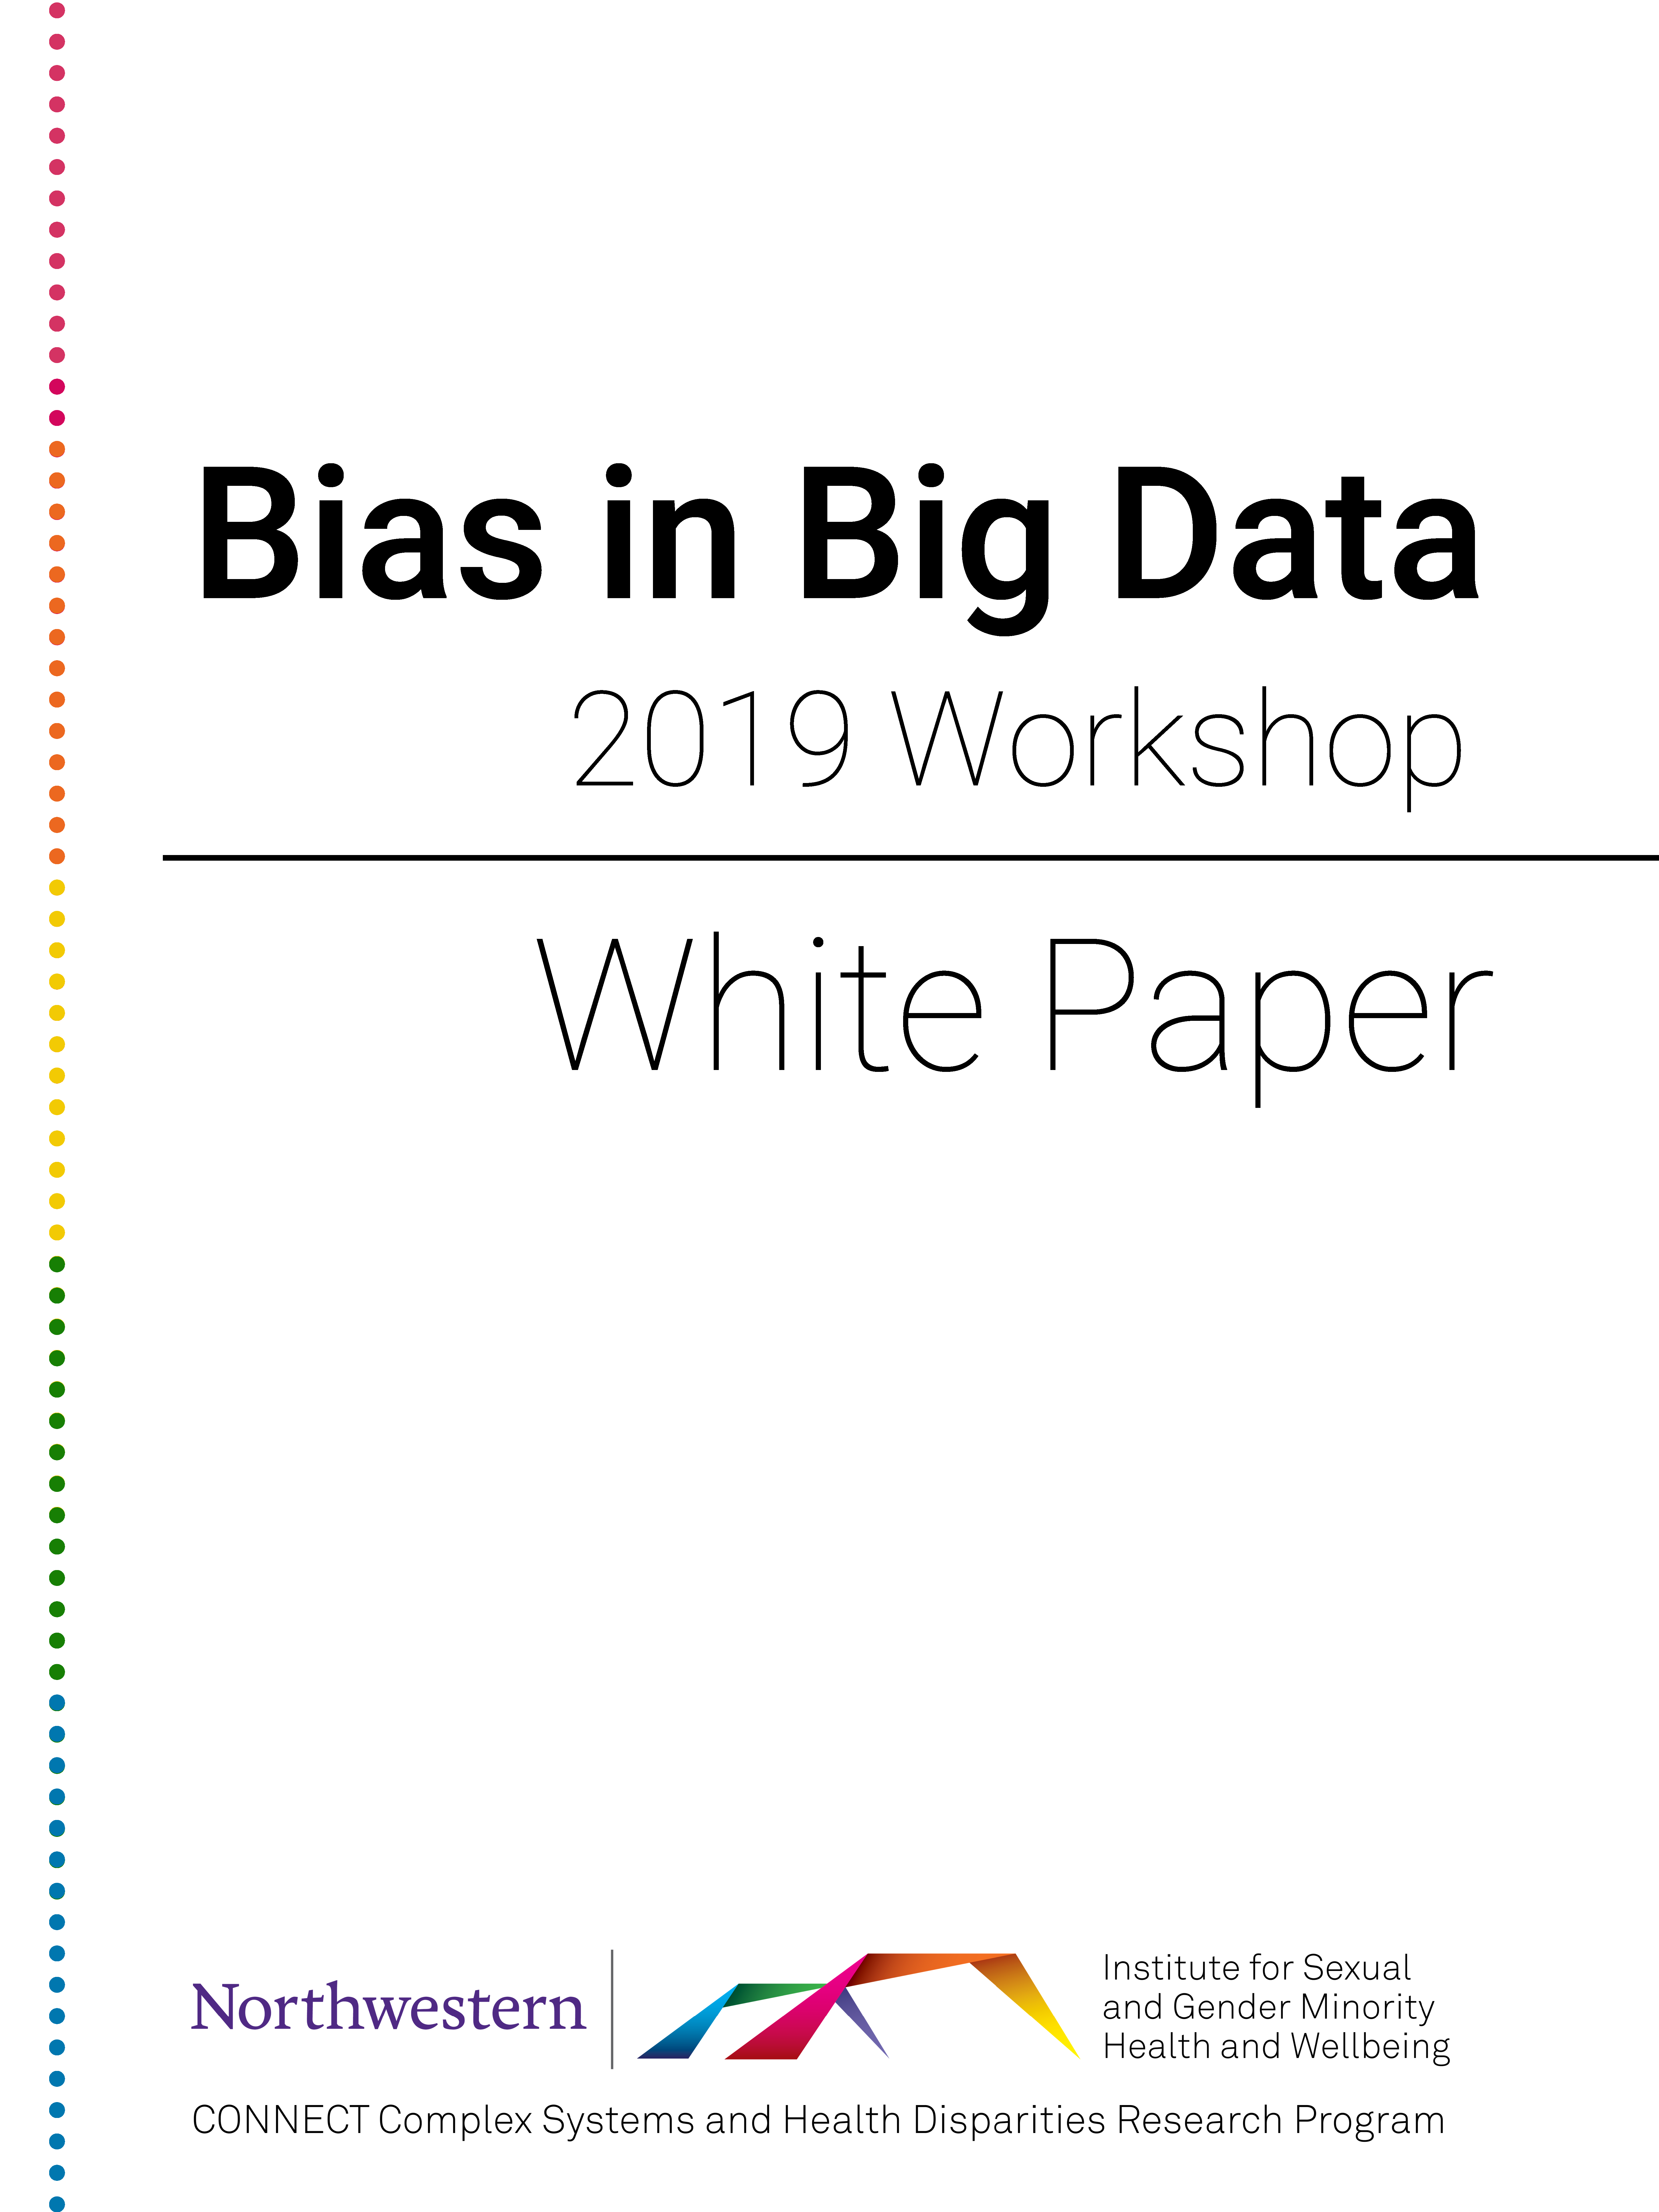 biasinbigdata-whitepaper-cover.png